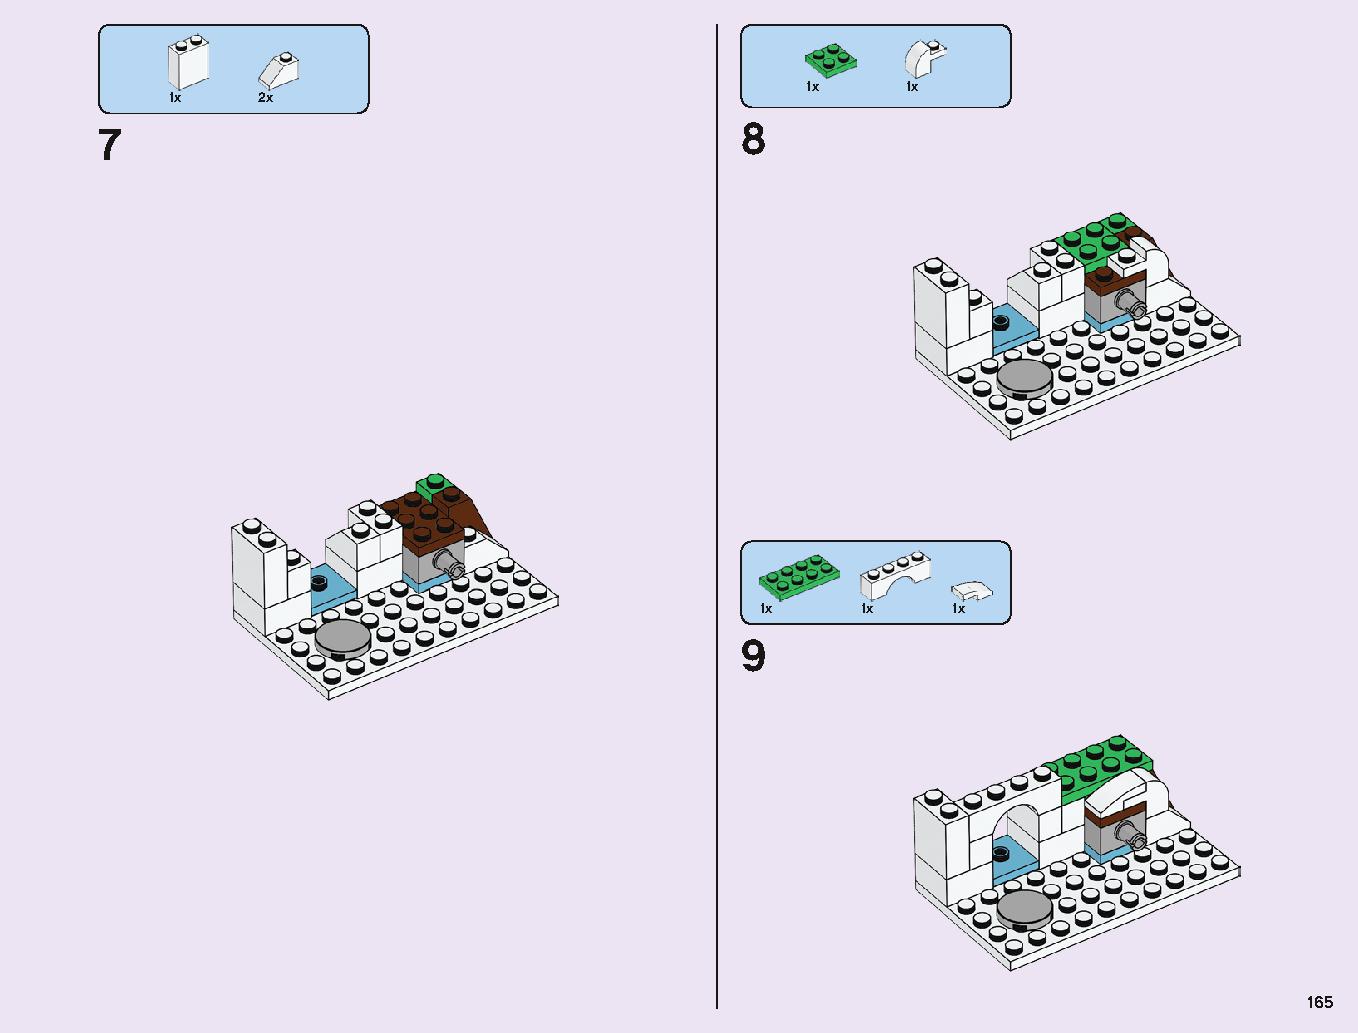 アナと雪の女王 “アイスキャッスル・ファンタジー” 43172 レゴの商品情報 レゴの説明書・組立方法 165 page